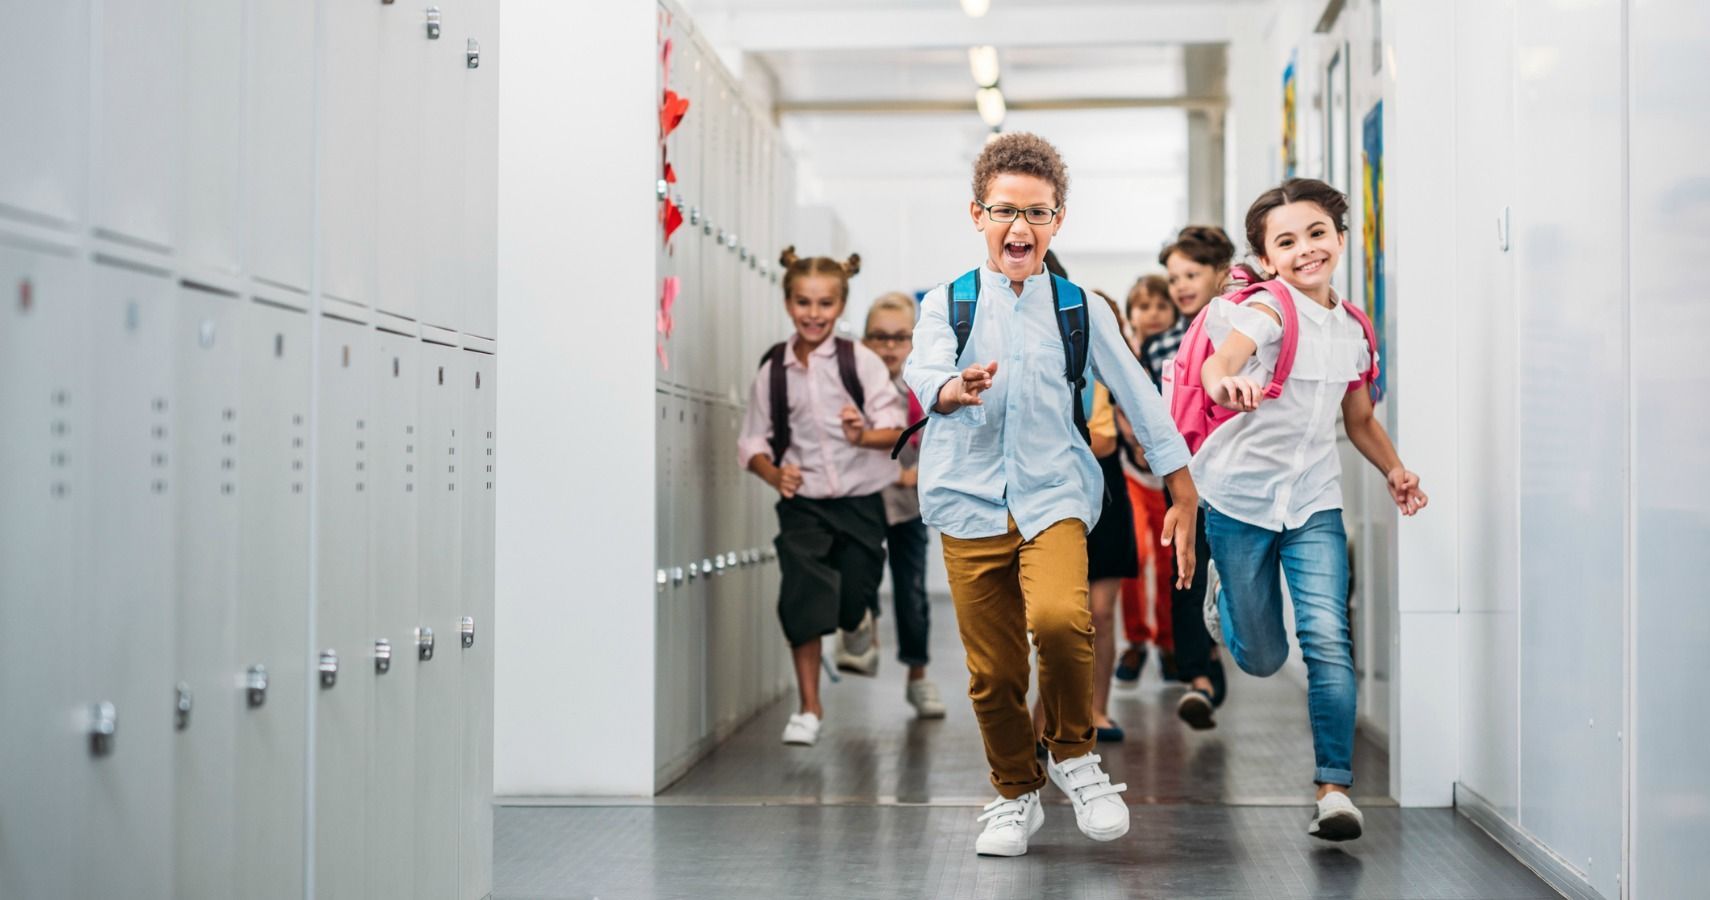 kids in school hallway